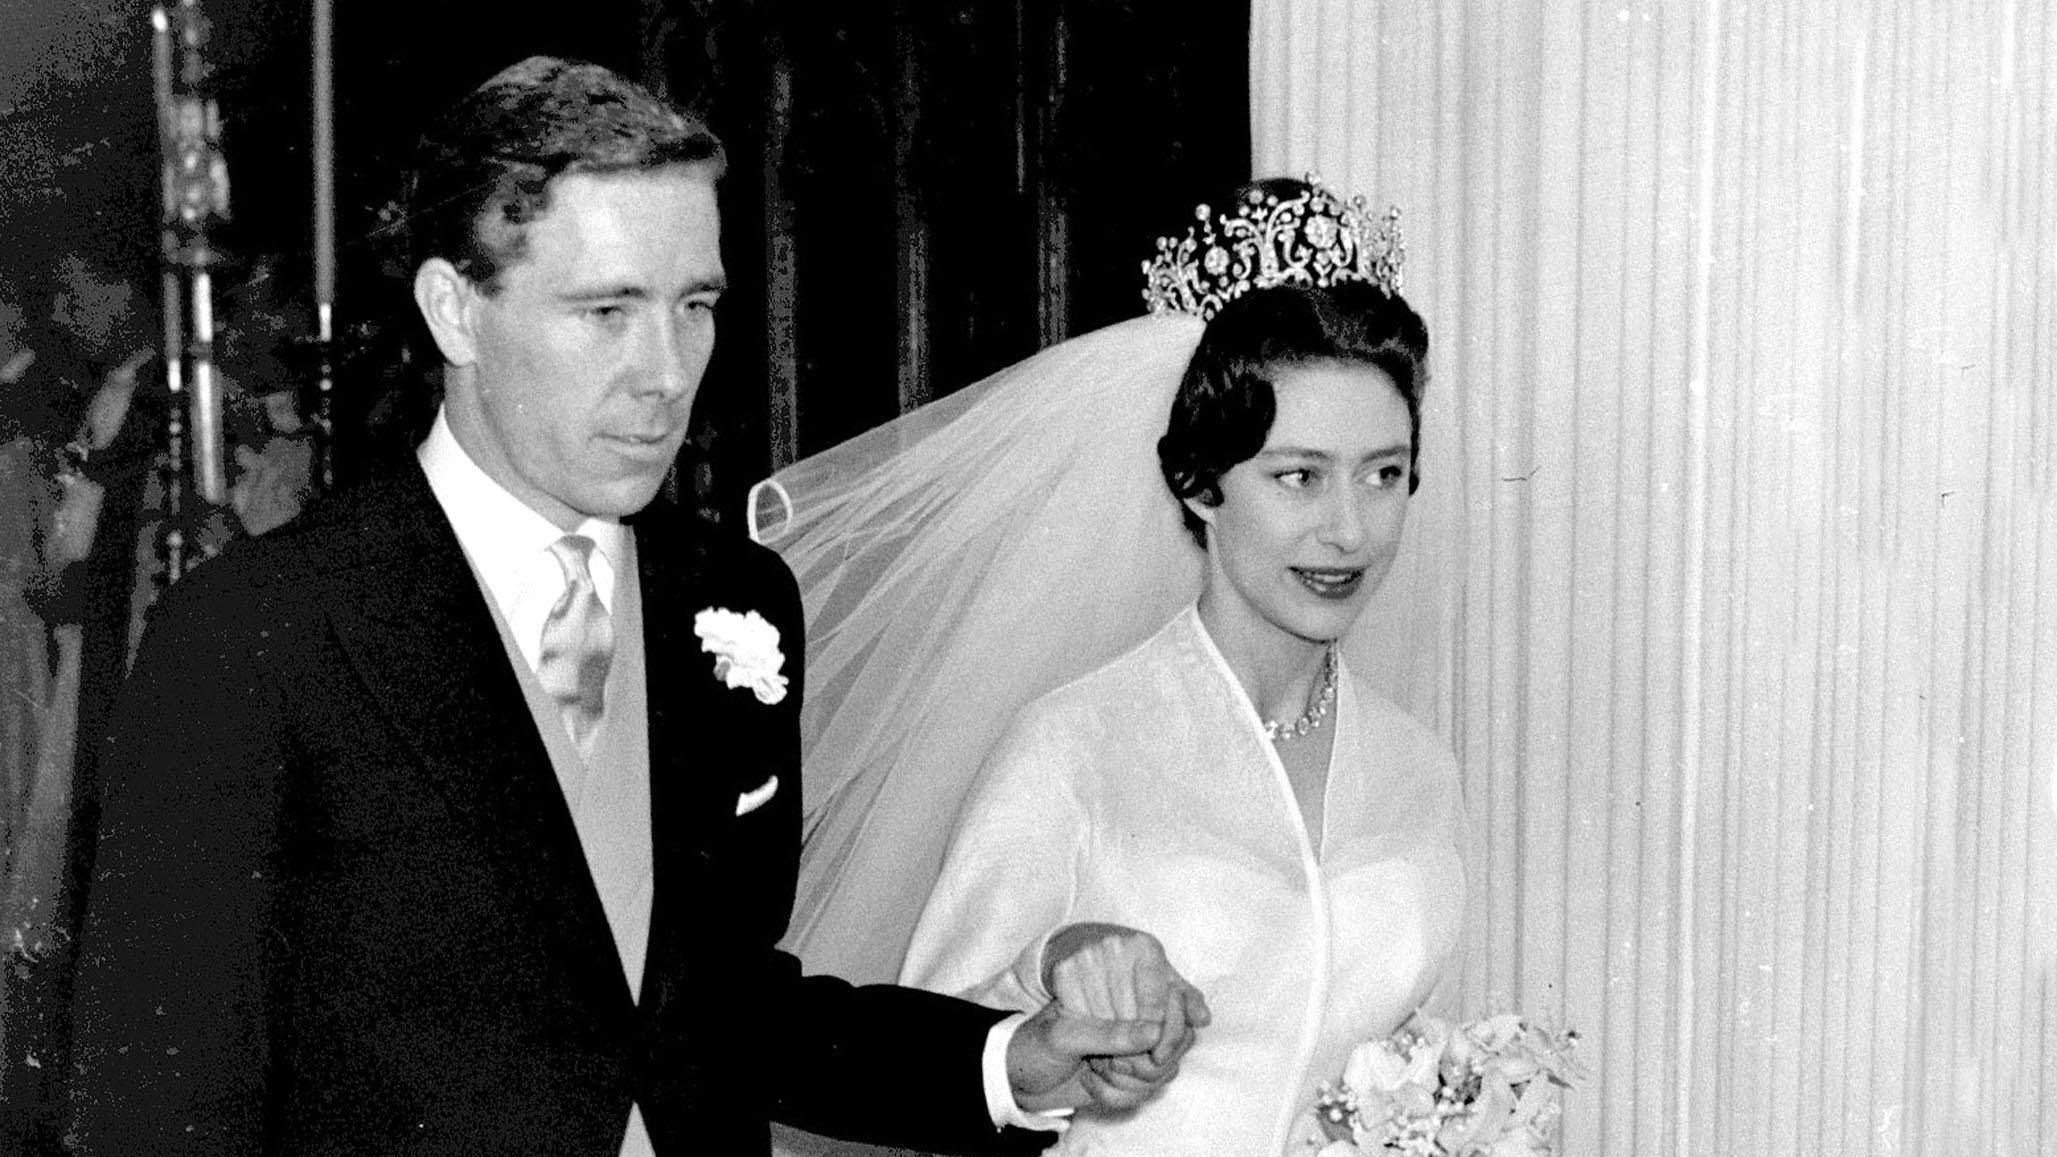 Prinzessin Margaret und Antony Armstrong-Jones heirateten in der Westminster Abbey. Was wie die große Liebe aussieht, wurde schnell zur Farce. Beide waren so unterschiedlich, dass die Ehe nach nur wenigen Jahren zur tickenden Zeitbombe wurde. Die Scheidung war, so Insider, nur eine Frage der Zeit.